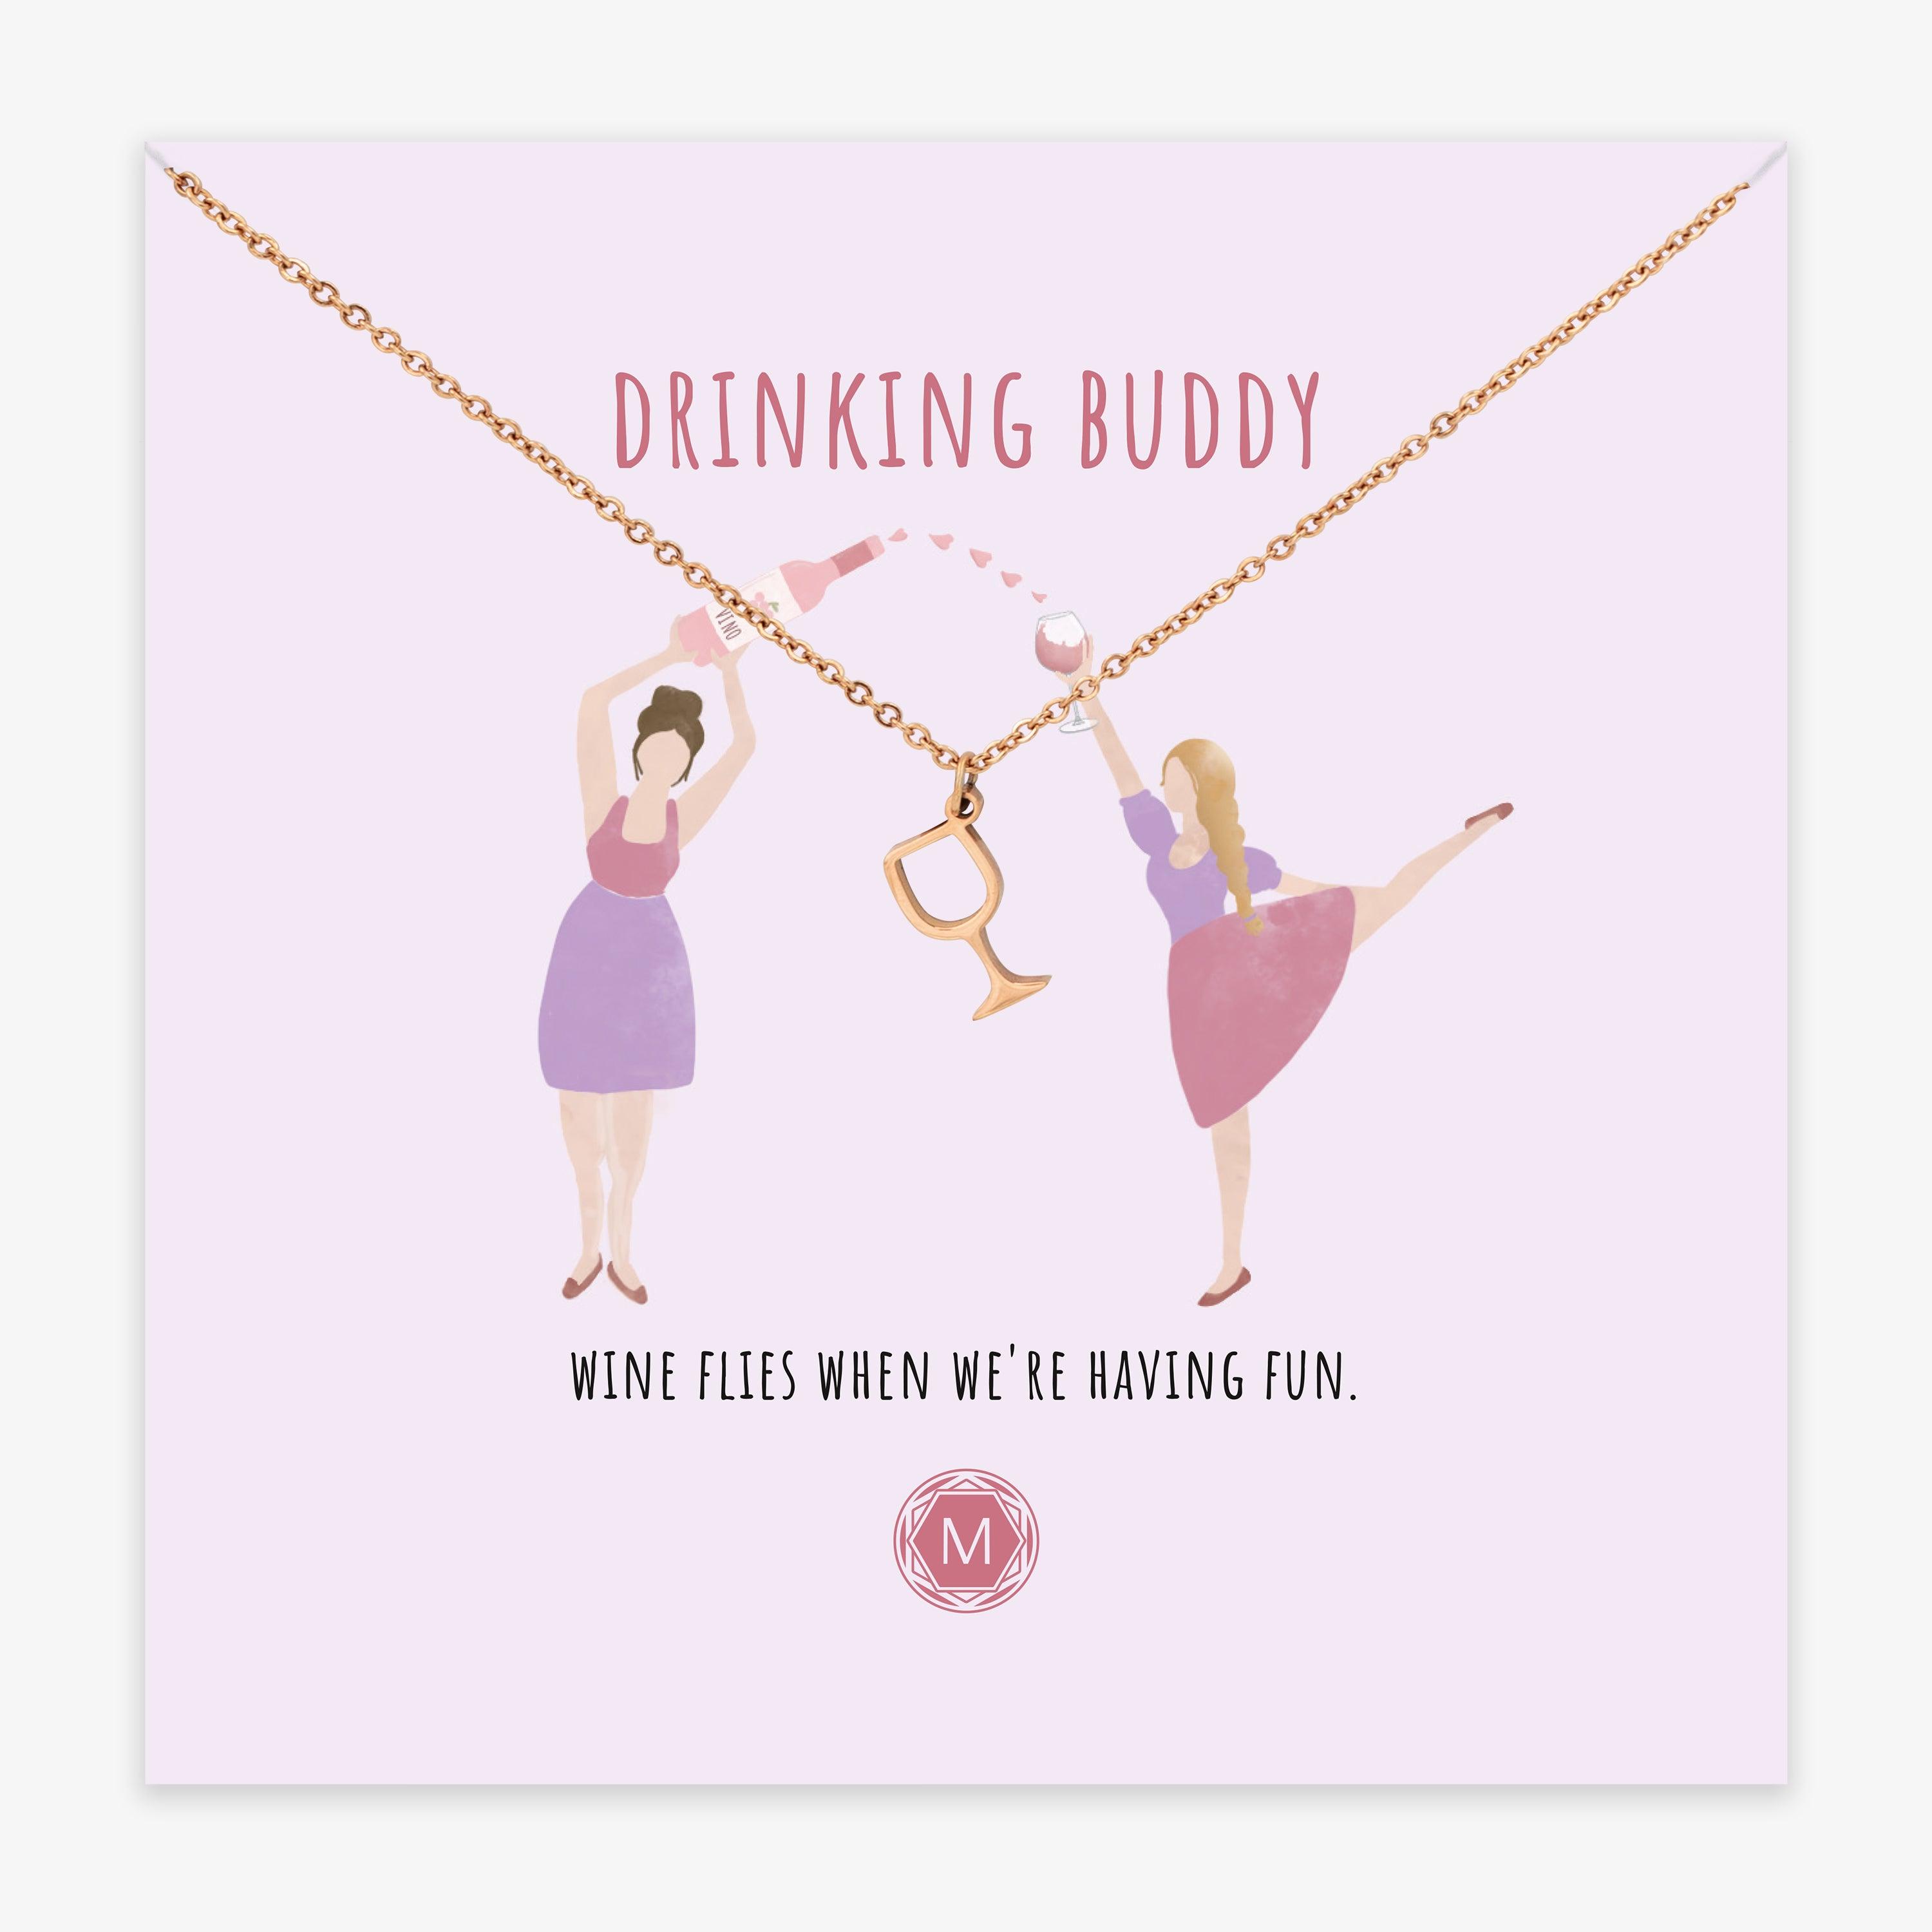 Murandum DRINKING BUDDY Necklace II Halskette - einschenken24.de